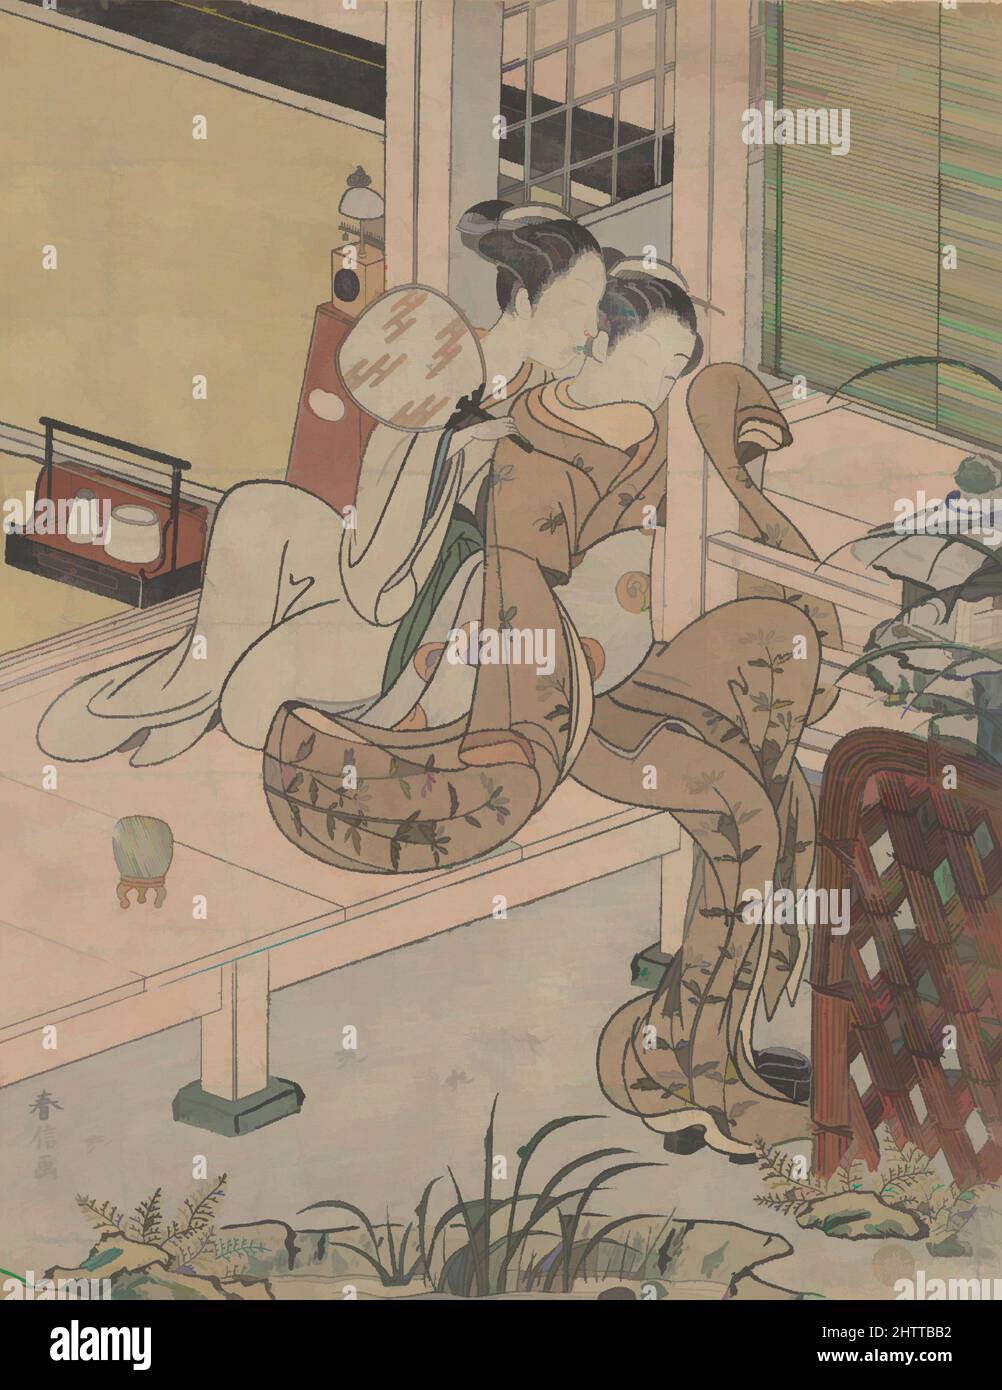 Kunst, inspiriert vom Klatsch, Edo-Zeit (1615–1868), ca. 1767, Japan, Polychromer Holzschnitt; Tinte und Farbe auf Papier, 10 1/4 x 7 1/4 Zoll (26 x 18,4 cm), Drucke, Suzuki Harunobu (japanisch, 1725–1770), in Harunobus künstlerischer Vision wird das Innenleben durch seine Beziehung zu den von Artotop modernisierten, klassischen Werken mit einem Schuss Moderne bestimmt. Formen, Farbe und Wert, auffällige visuelle Wirkung auf Kunst. Emotionen durch Freiheit von Kunstwerken auf zeitgemäße Weise. Eine zeitlose Botschaft, die eine wild kreative neue Richtung verfolgt. Künstler, die sich dem digitalen Medium zuwenden und die Artotop NFT erschaffen Stockfoto